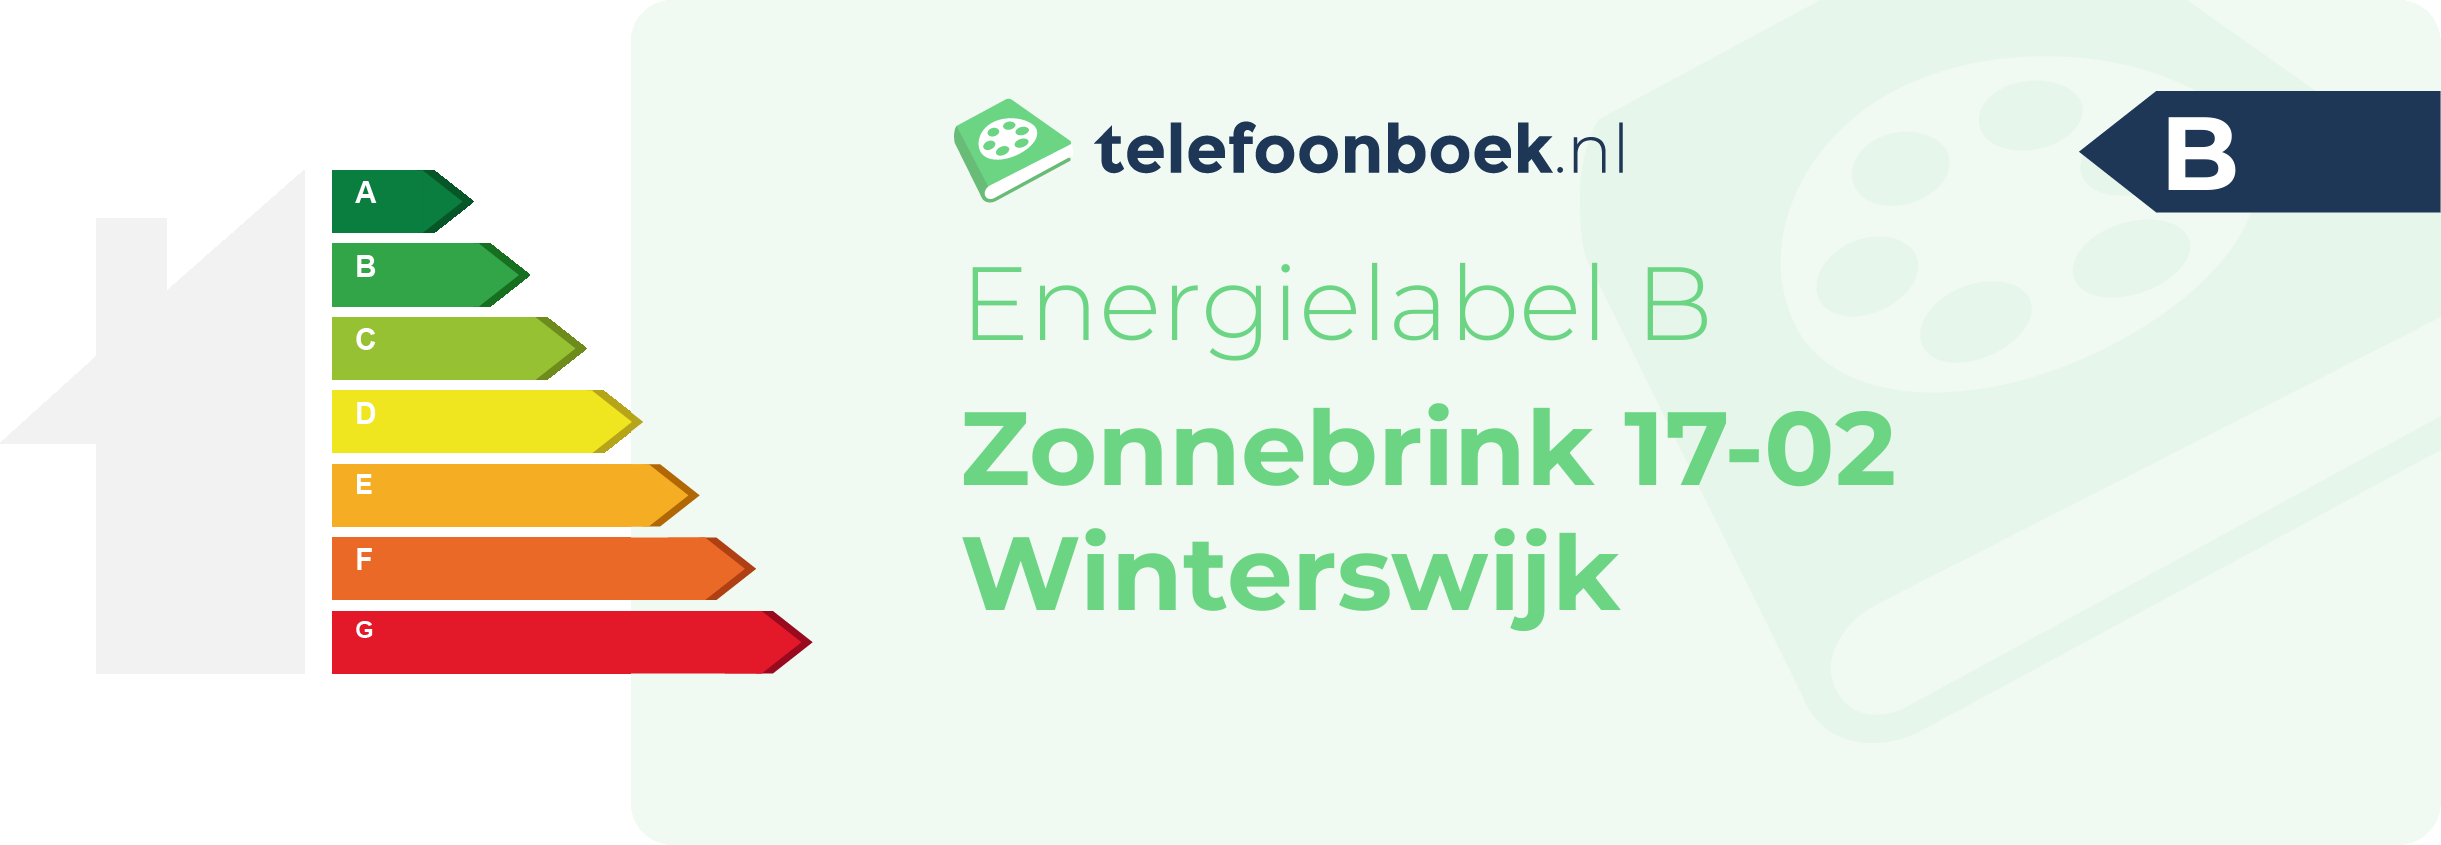 Energielabel Zonnebrink 17-02 Winterswijk